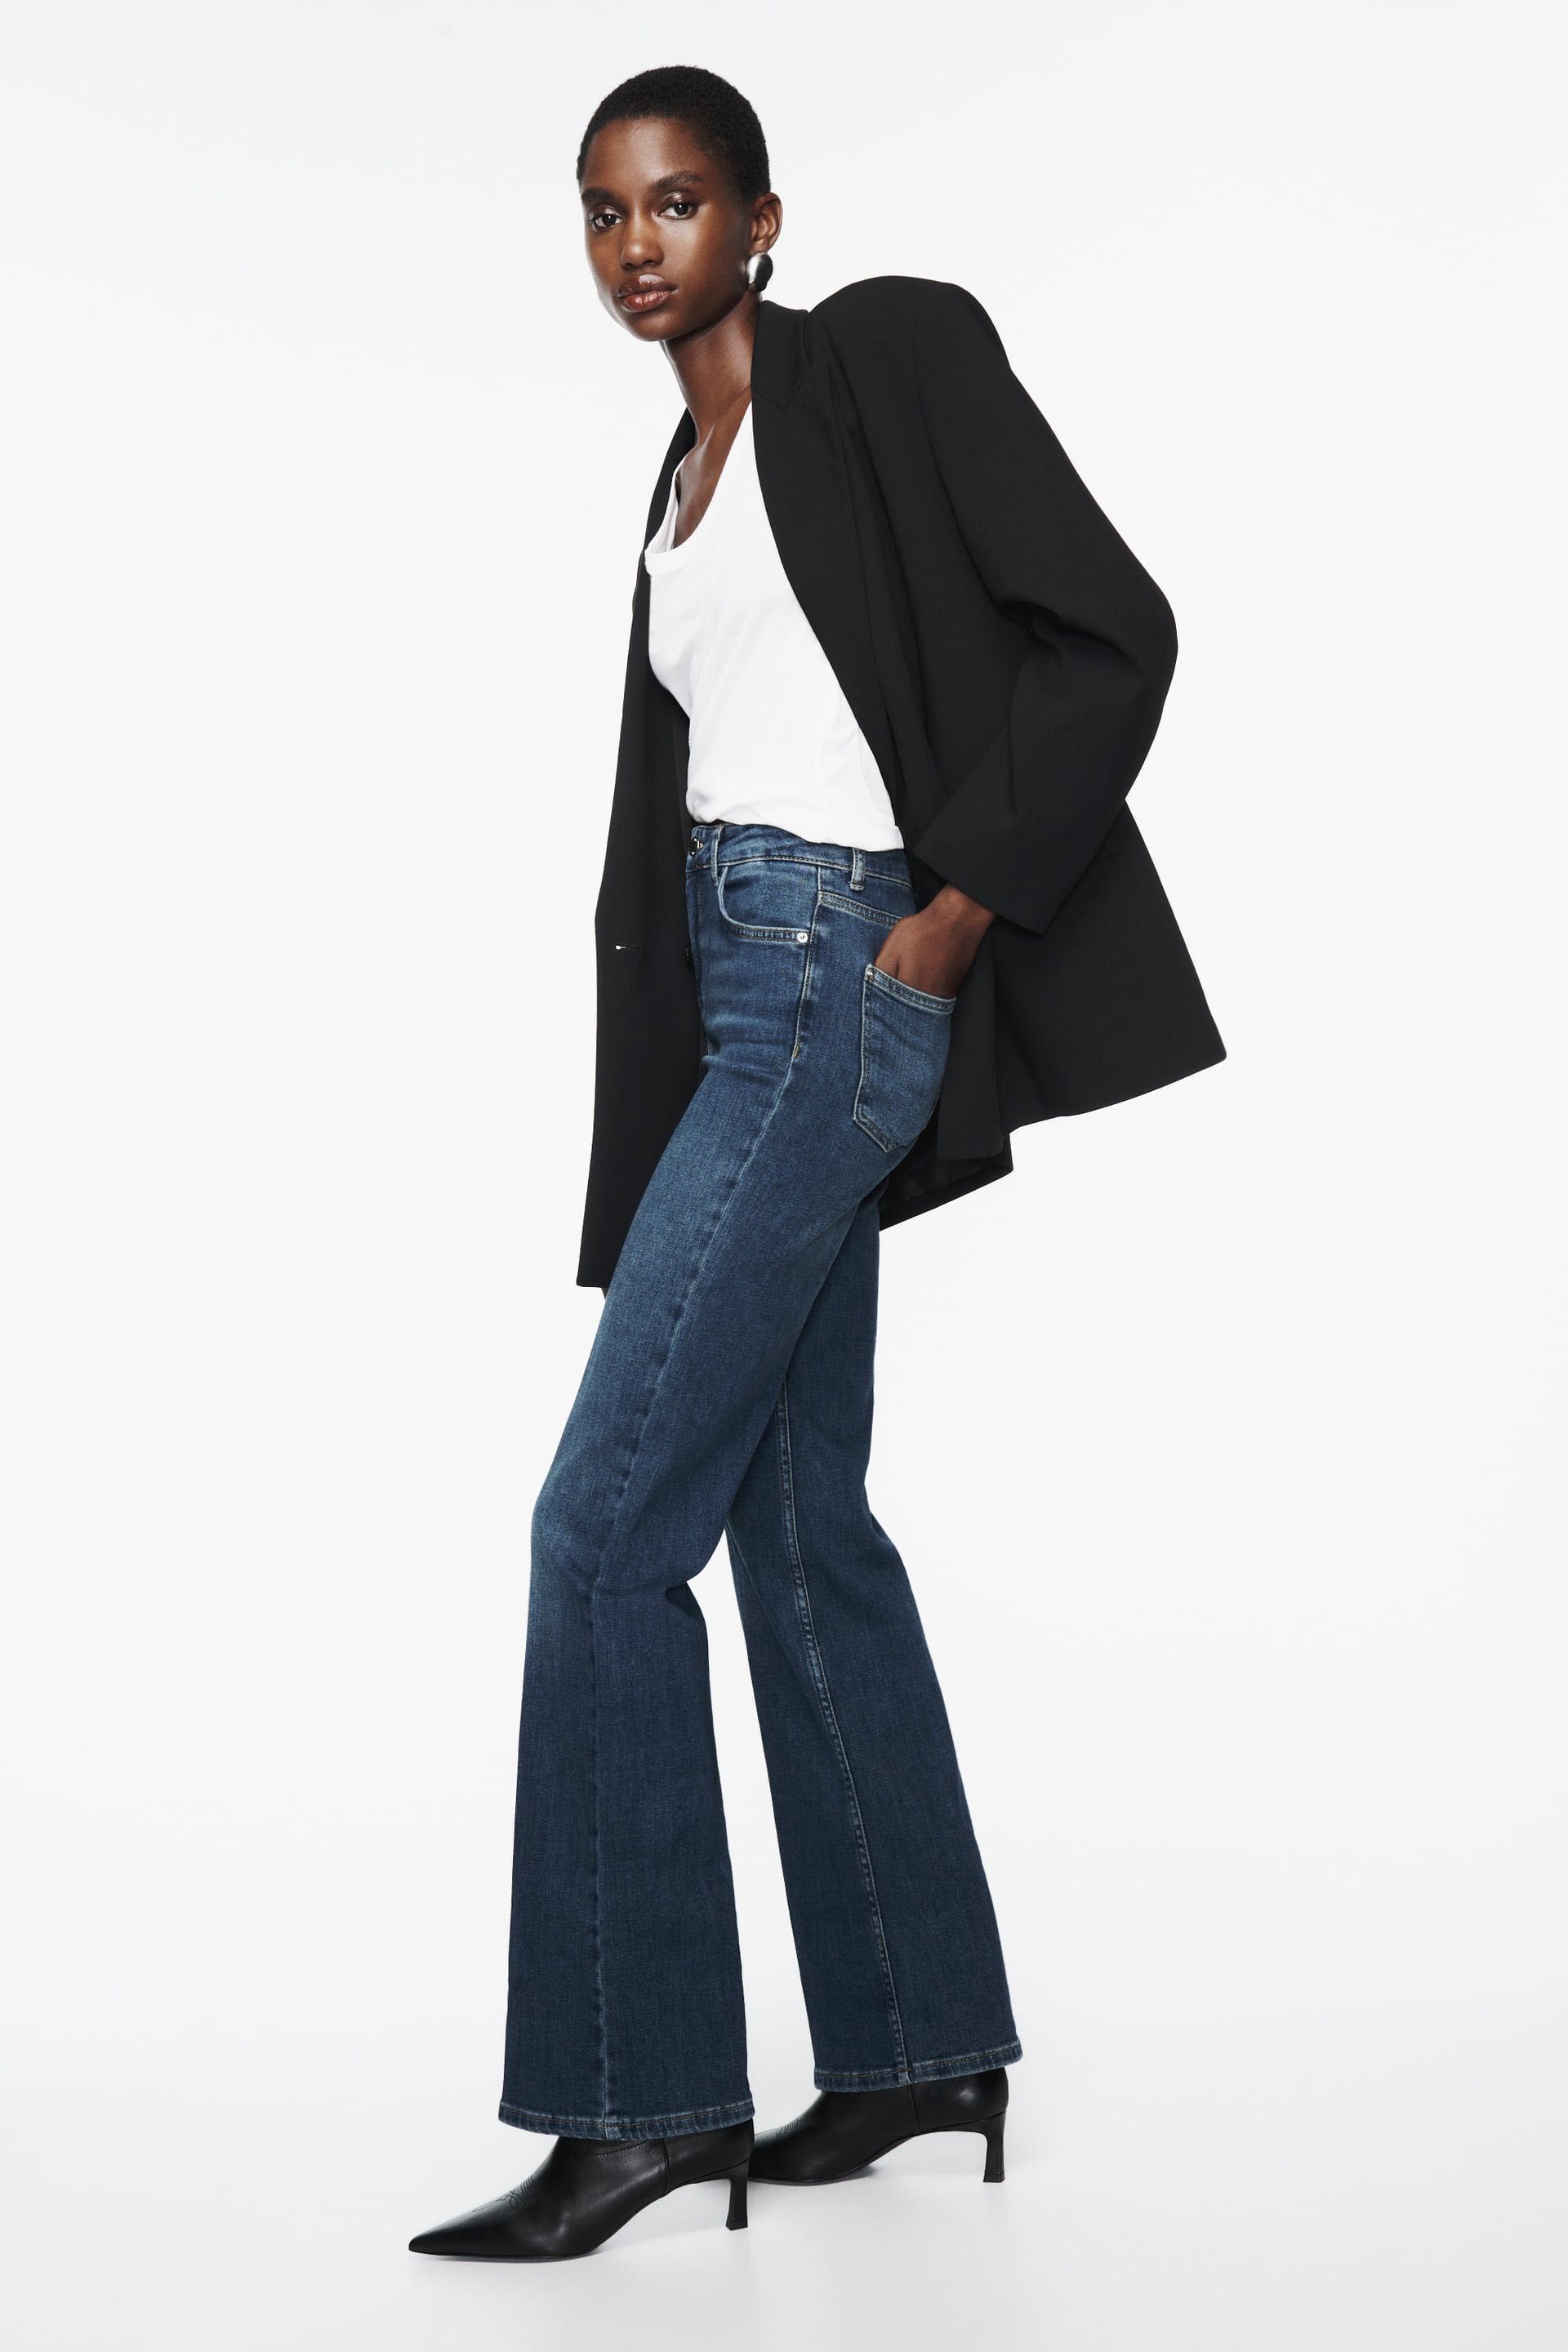 Стильні джинси від Zara